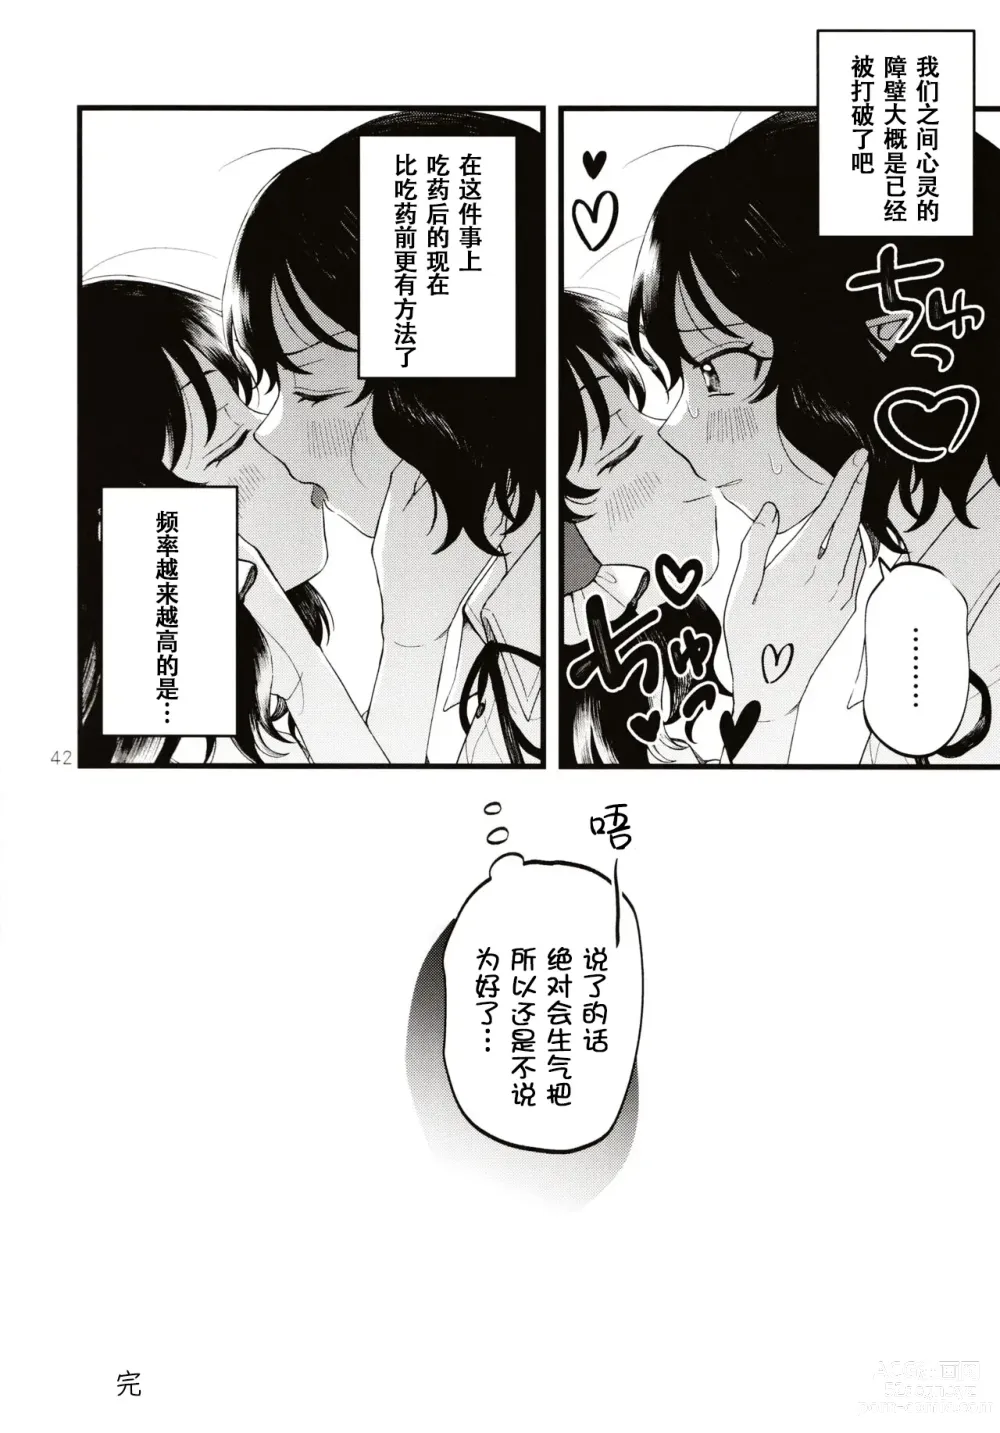 Page 41 of doujinshi Rubeus no Kankai